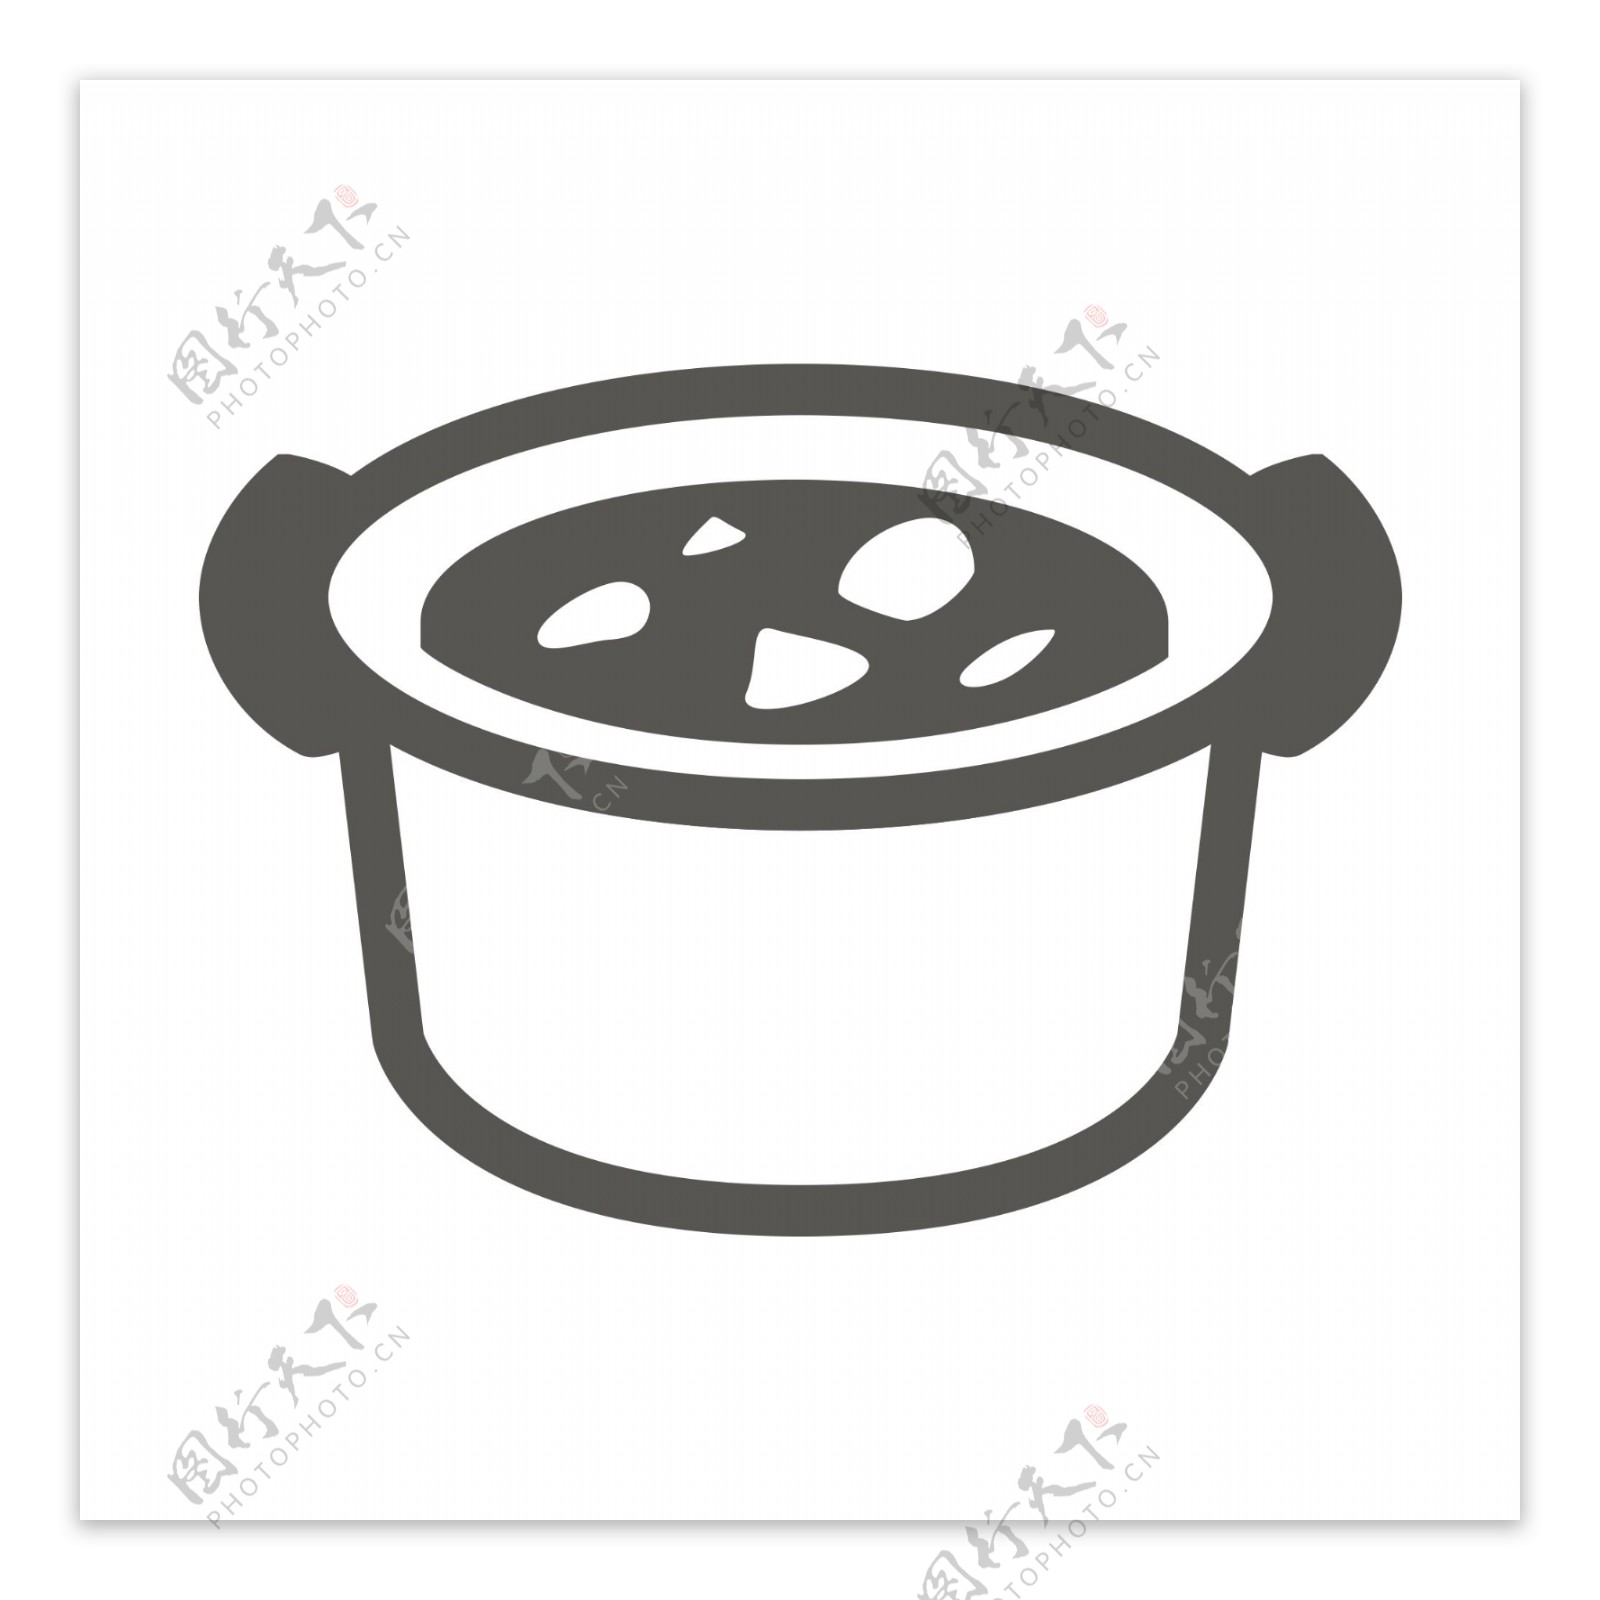 扁平化铁锅